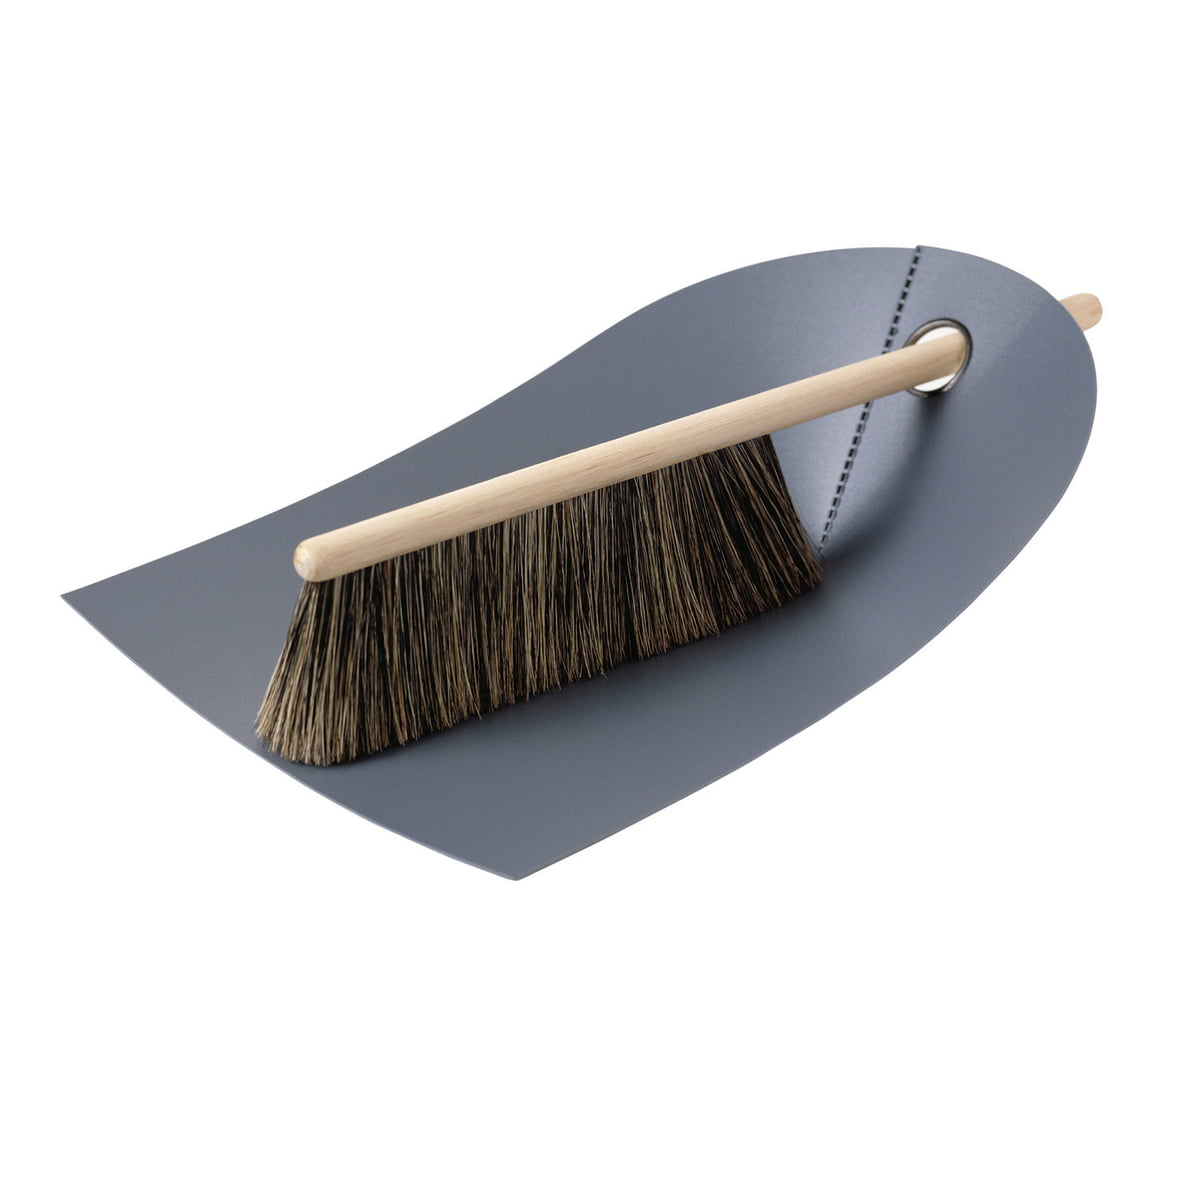 https://cdn.connox.com/m/100030/130226/media/normann-copenhagen/Handfeger-und-Kehrblech/Dustpan-and-broom-darkgrey.jpg